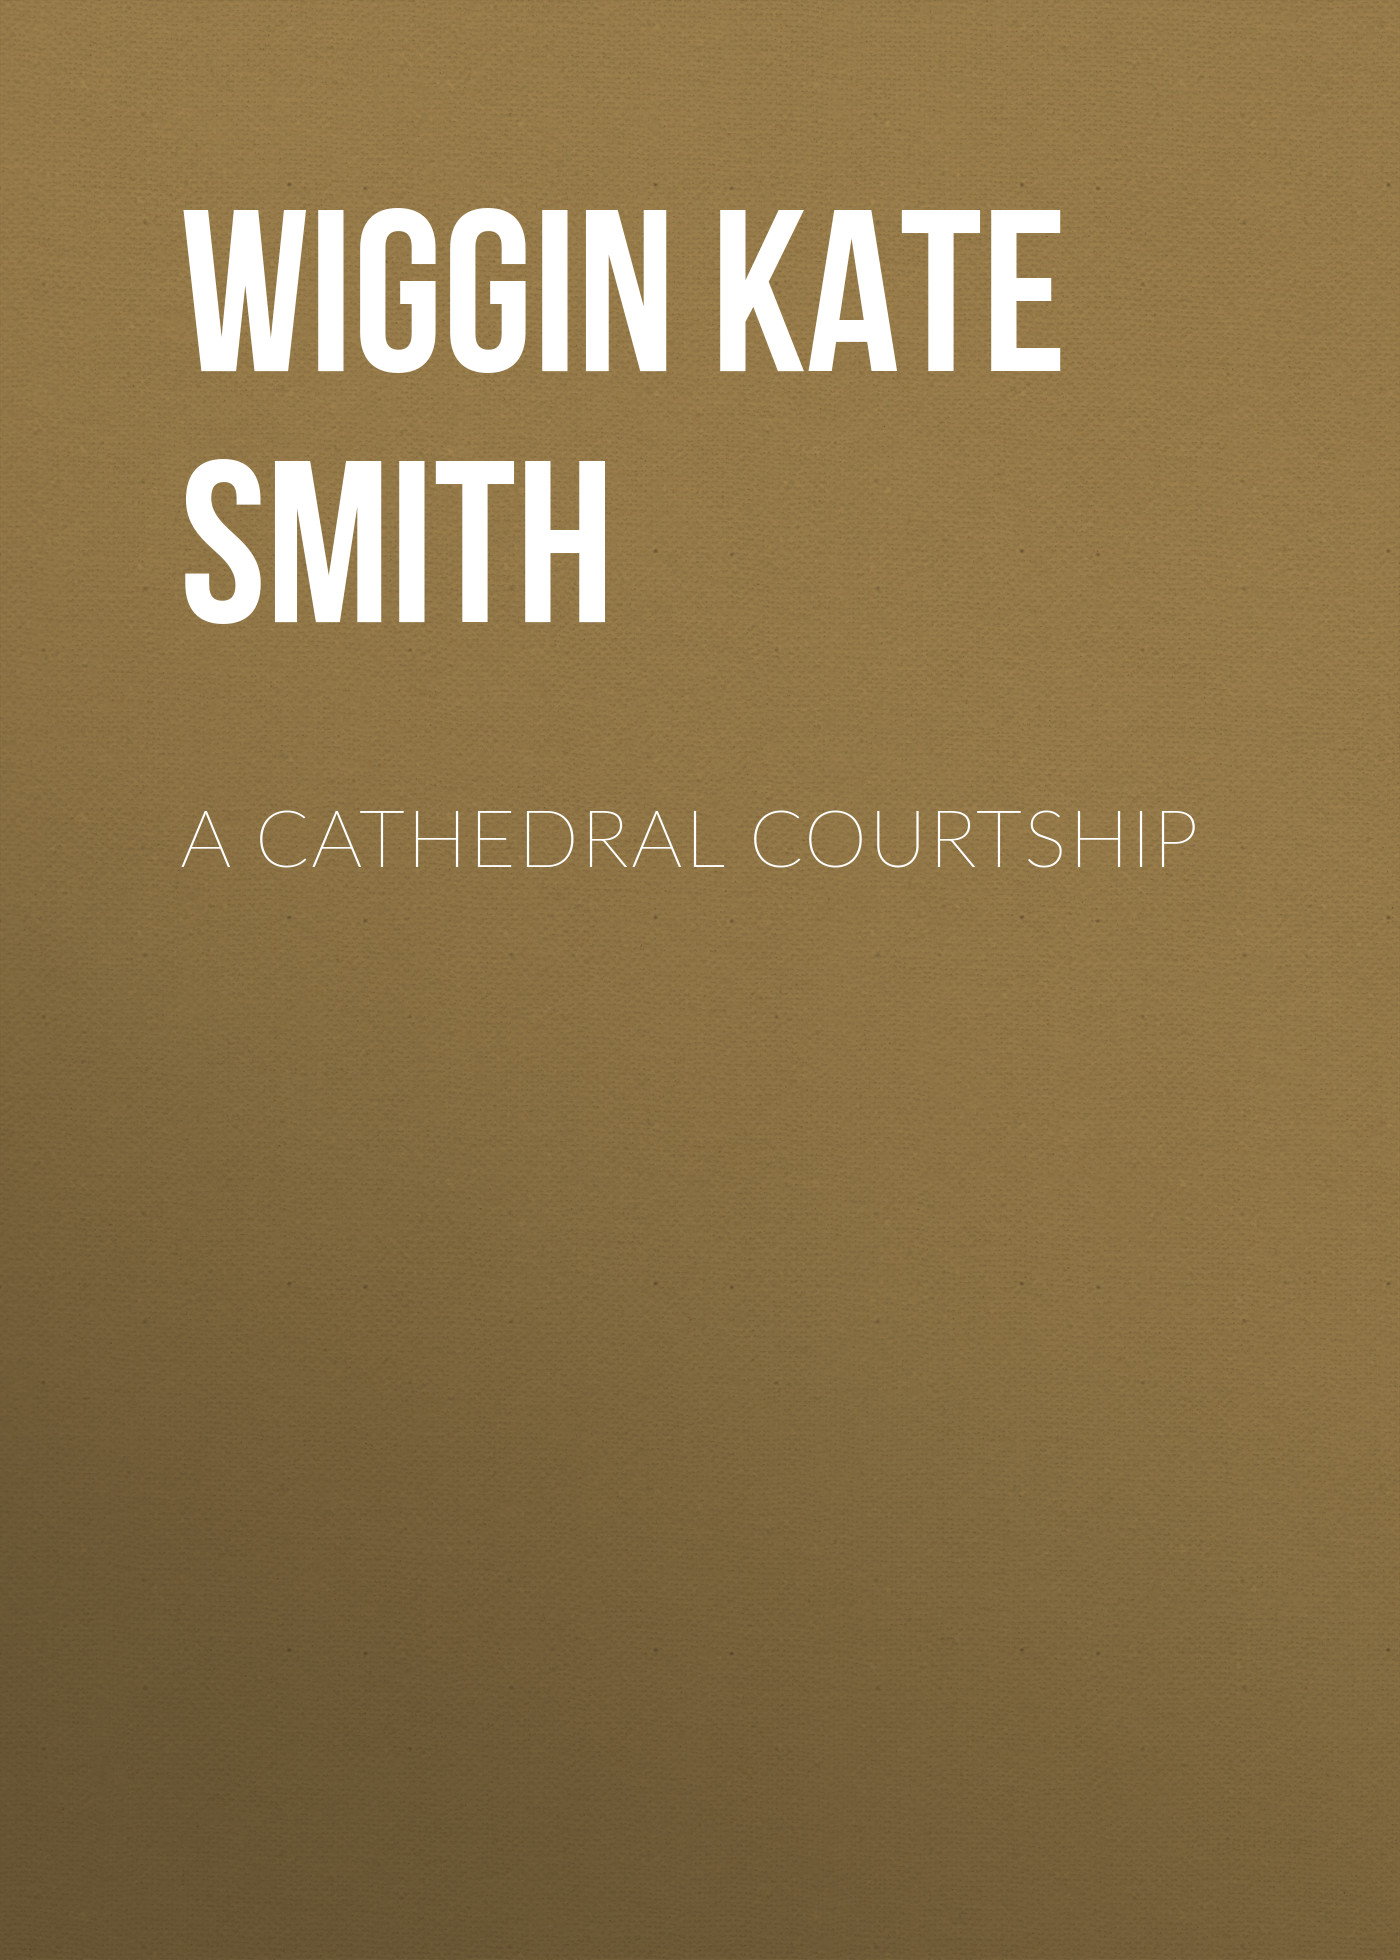 Книга A Cathedral Courtship из серии , созданная Kate Wiggin, может относится к жанру Зарубежная классика, Зарубежная старинная литература. Стоимость электронной книги A Cathedral Courtship с идентификатором 36323396 составляет 0 руб.